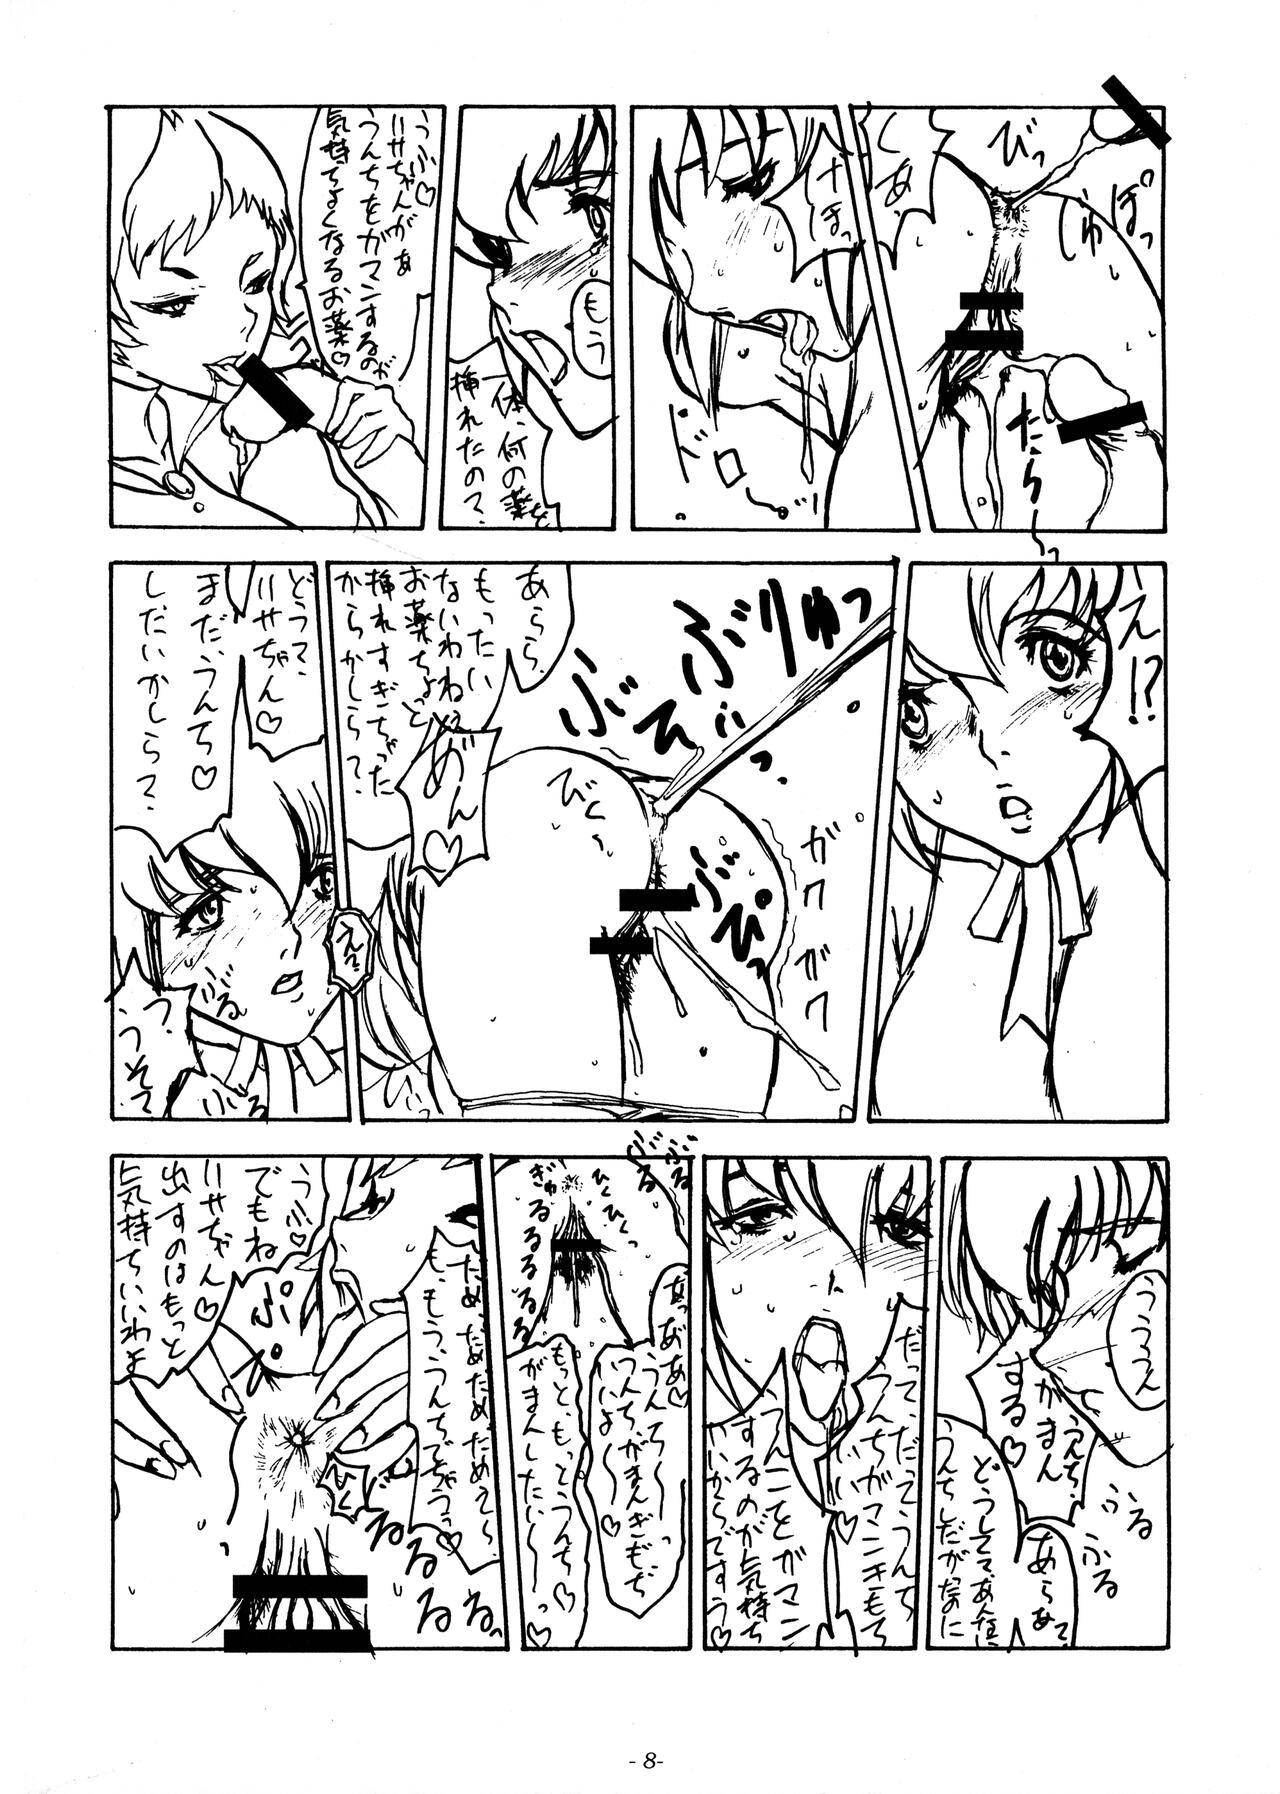 This Mieru? Kono watashi no koumon ni iyarashiku kui komu FUNDOSHI Sixtynine - Page 10